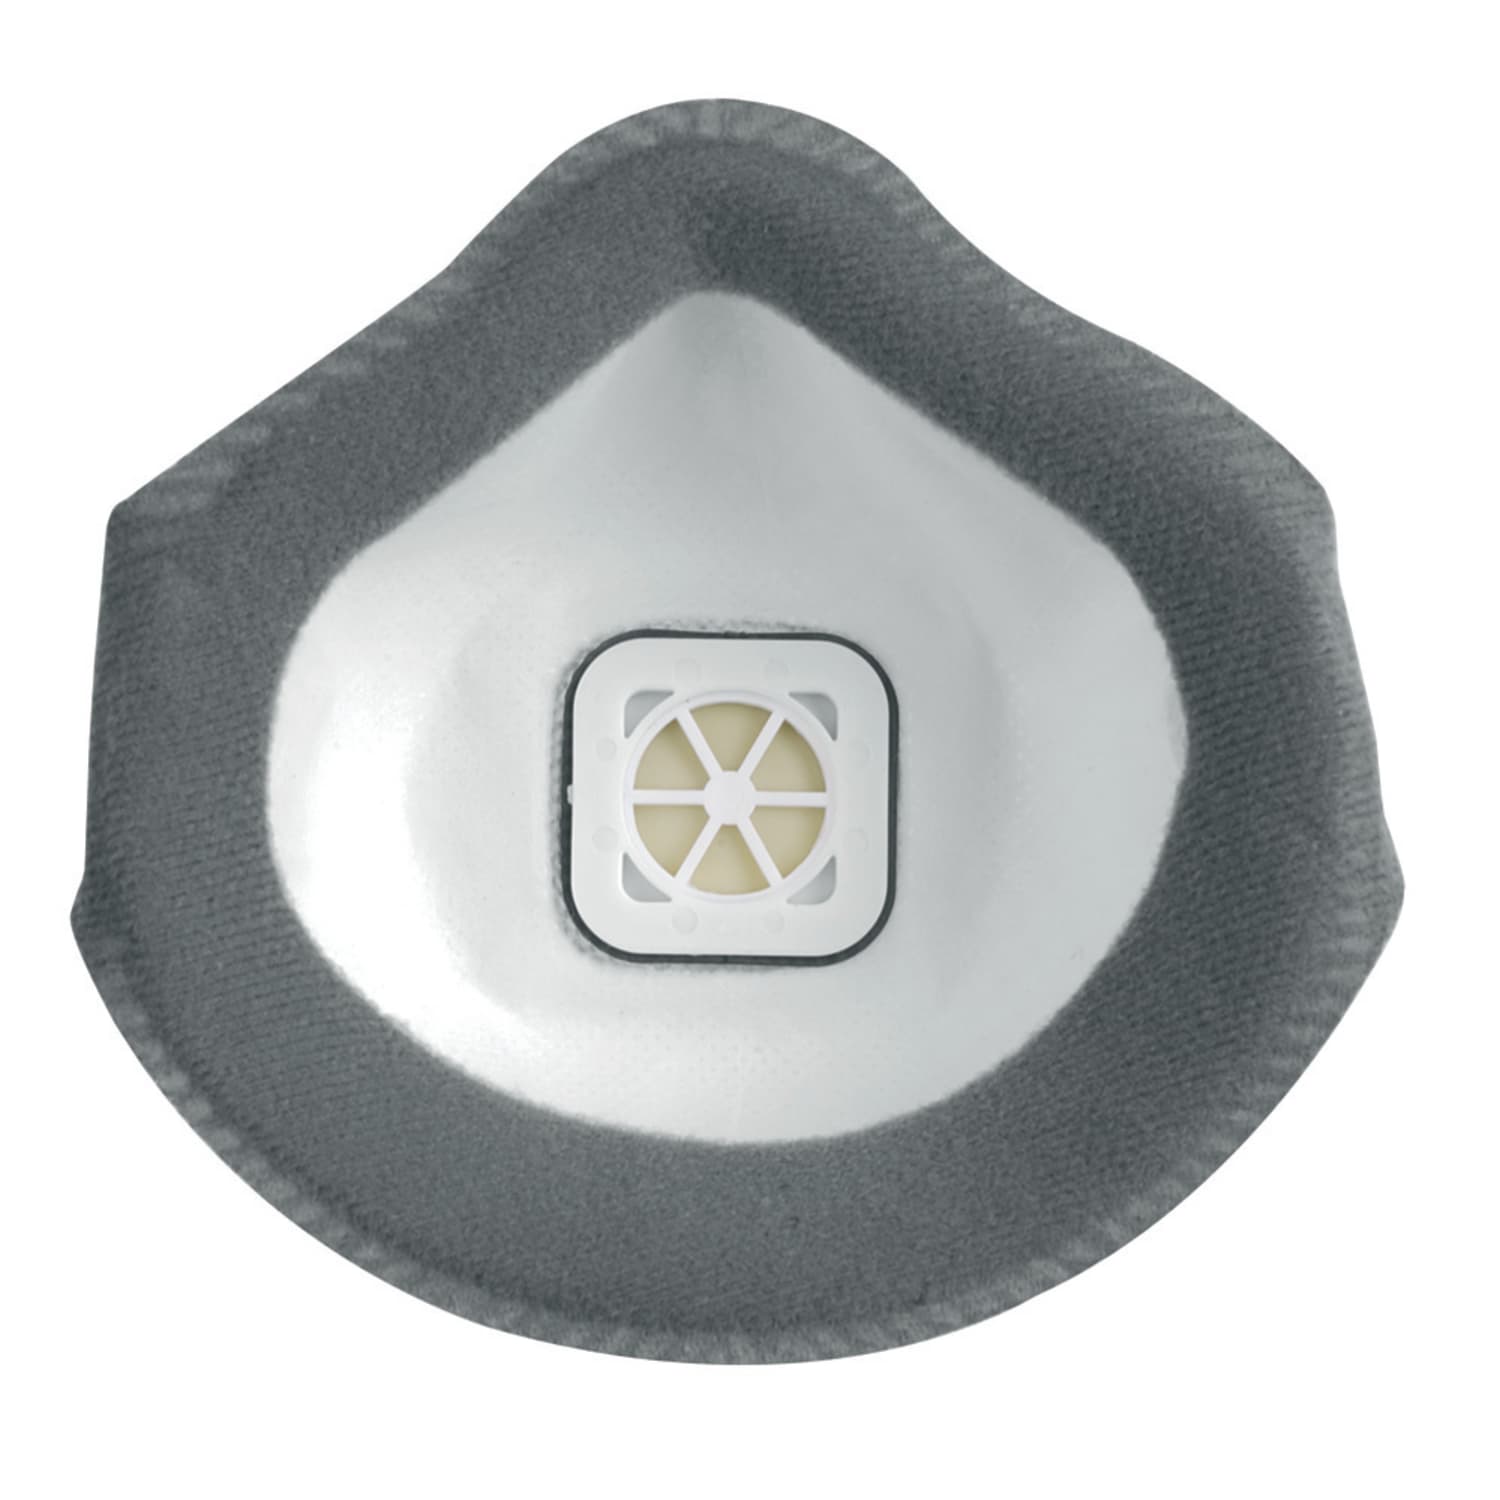 Masque de protection anti-poussières Flexinet 823 FFP2 JSP OV anti-odeur forme coque avec valve photo du produit Back View ZOOM